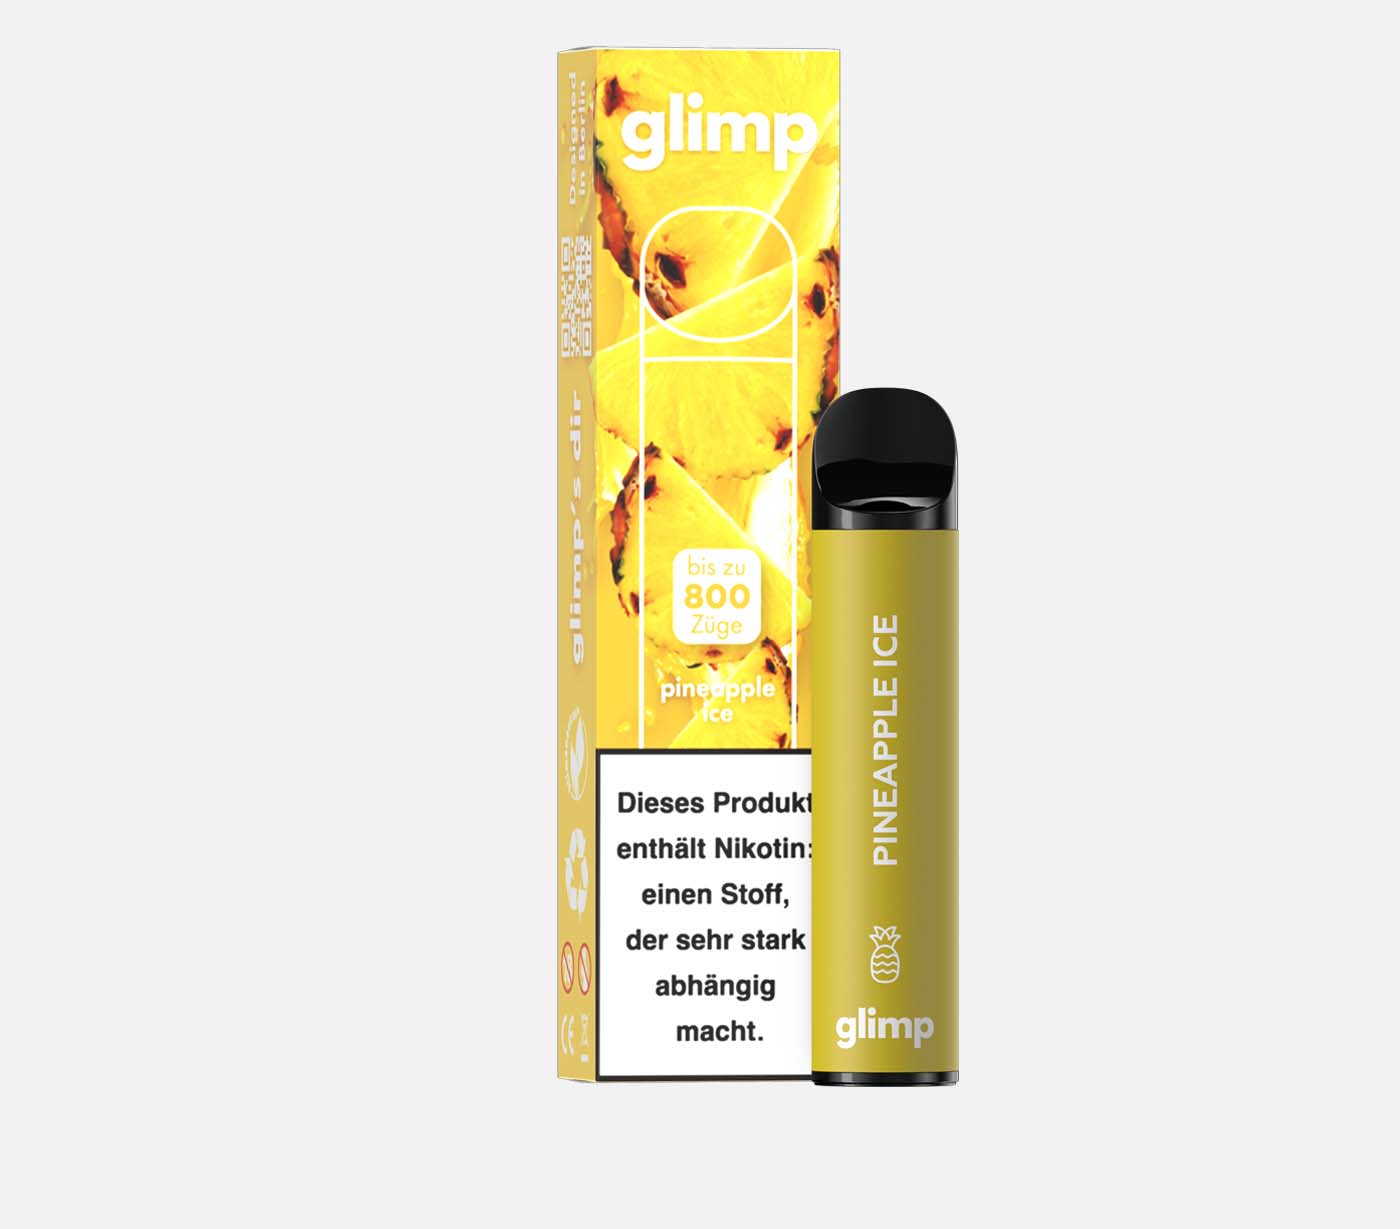 GLIMP 800 pineapple ice